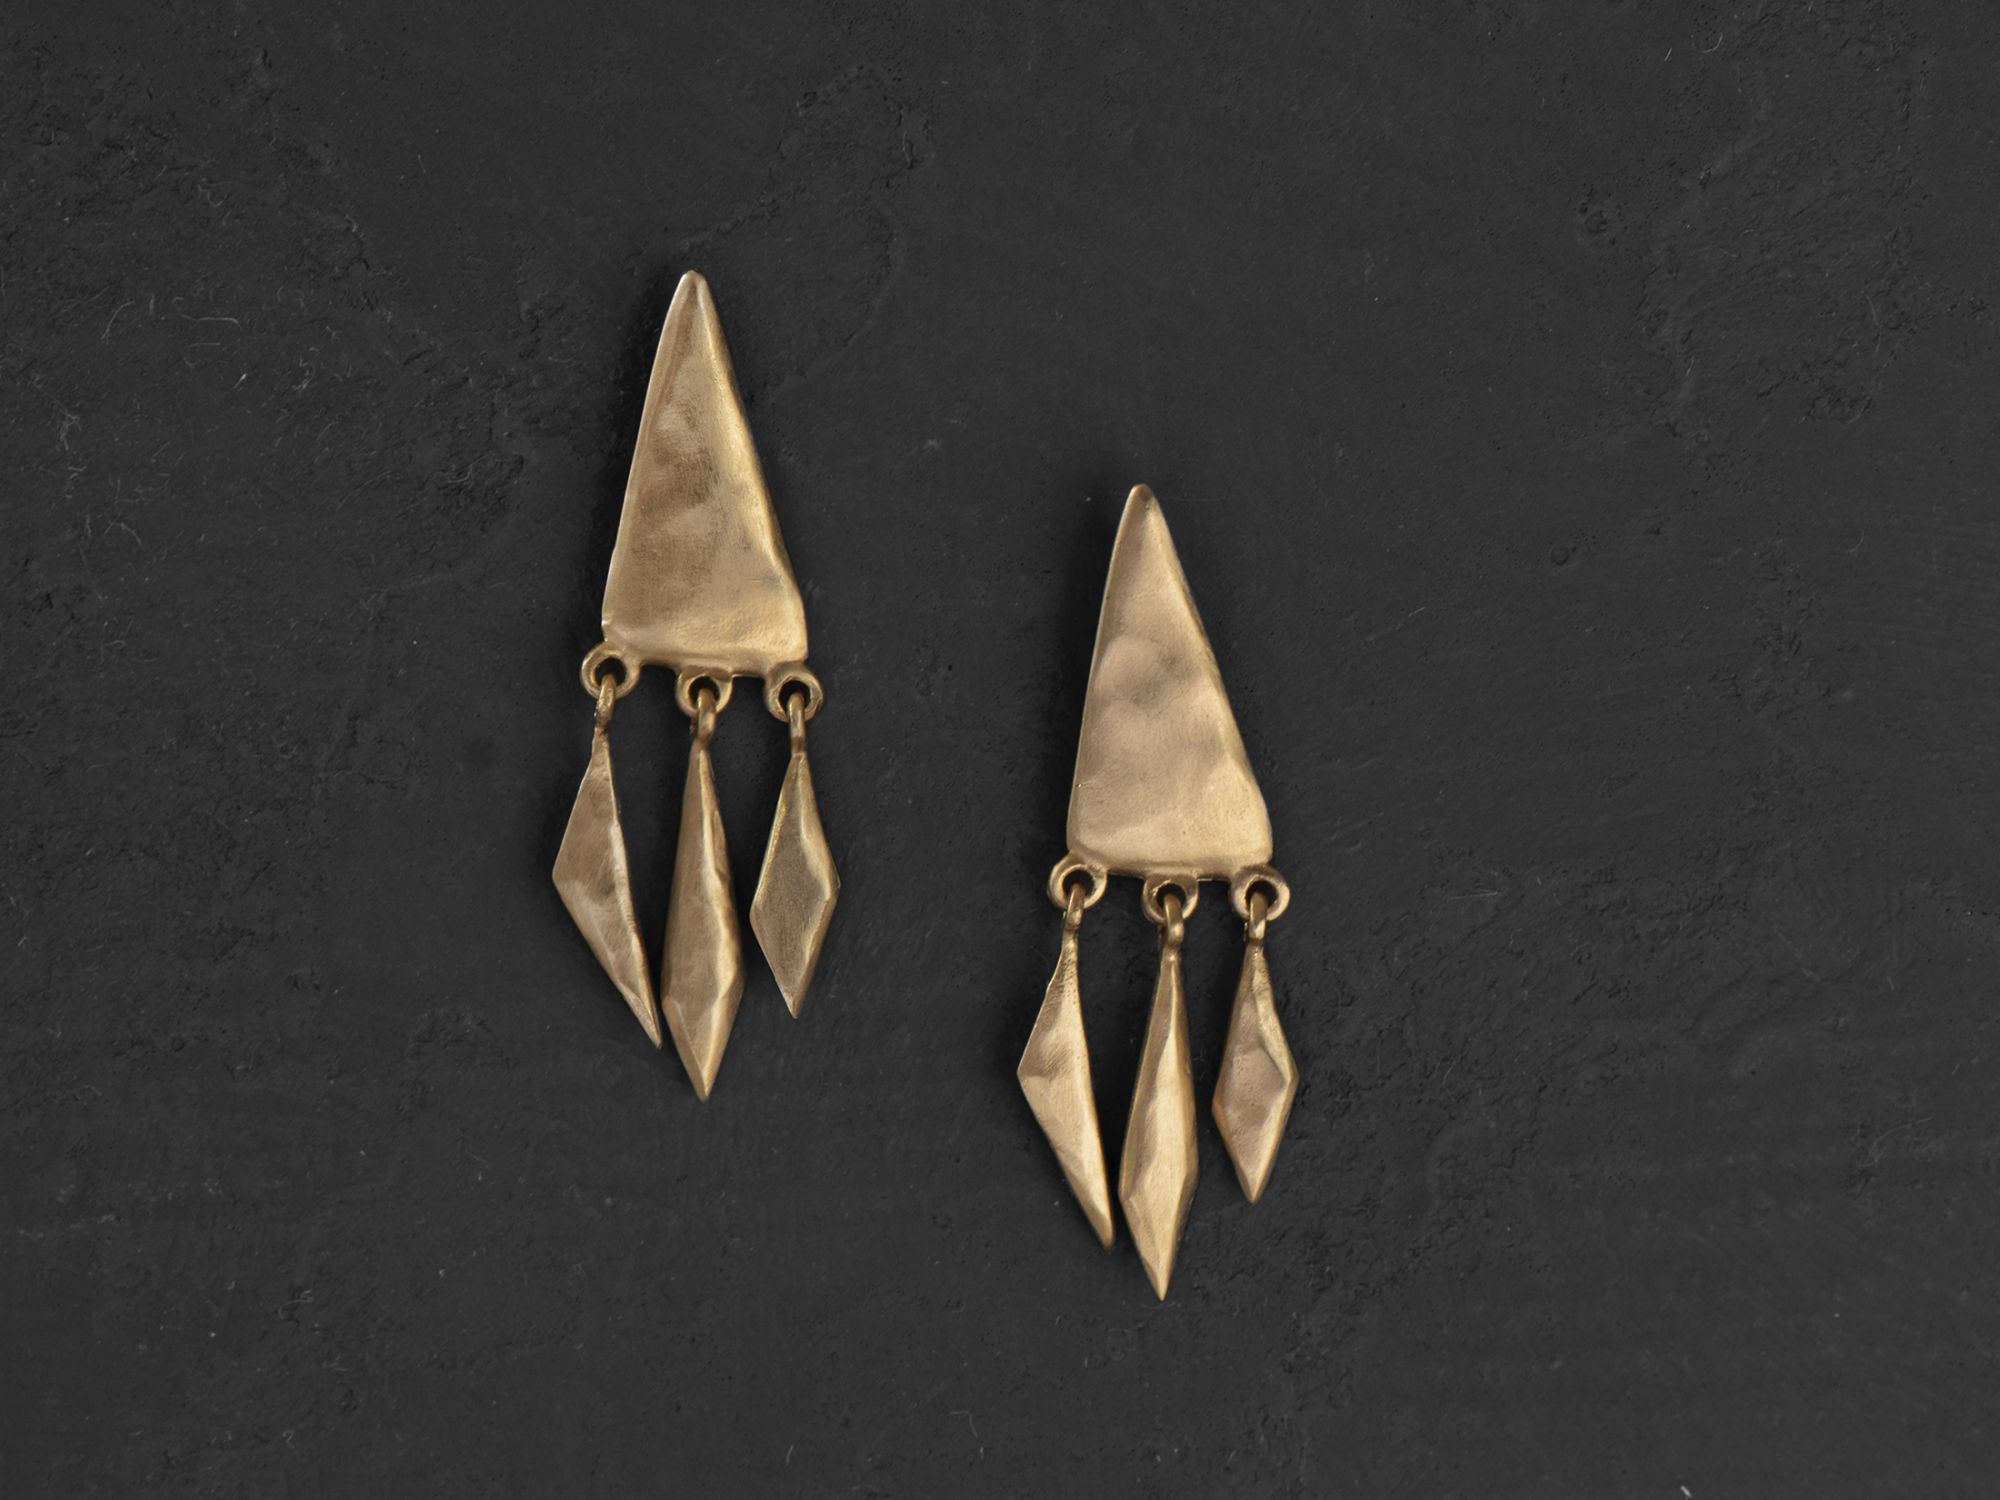 Stromboli vermeil earrings by Emmanuelle Zysman